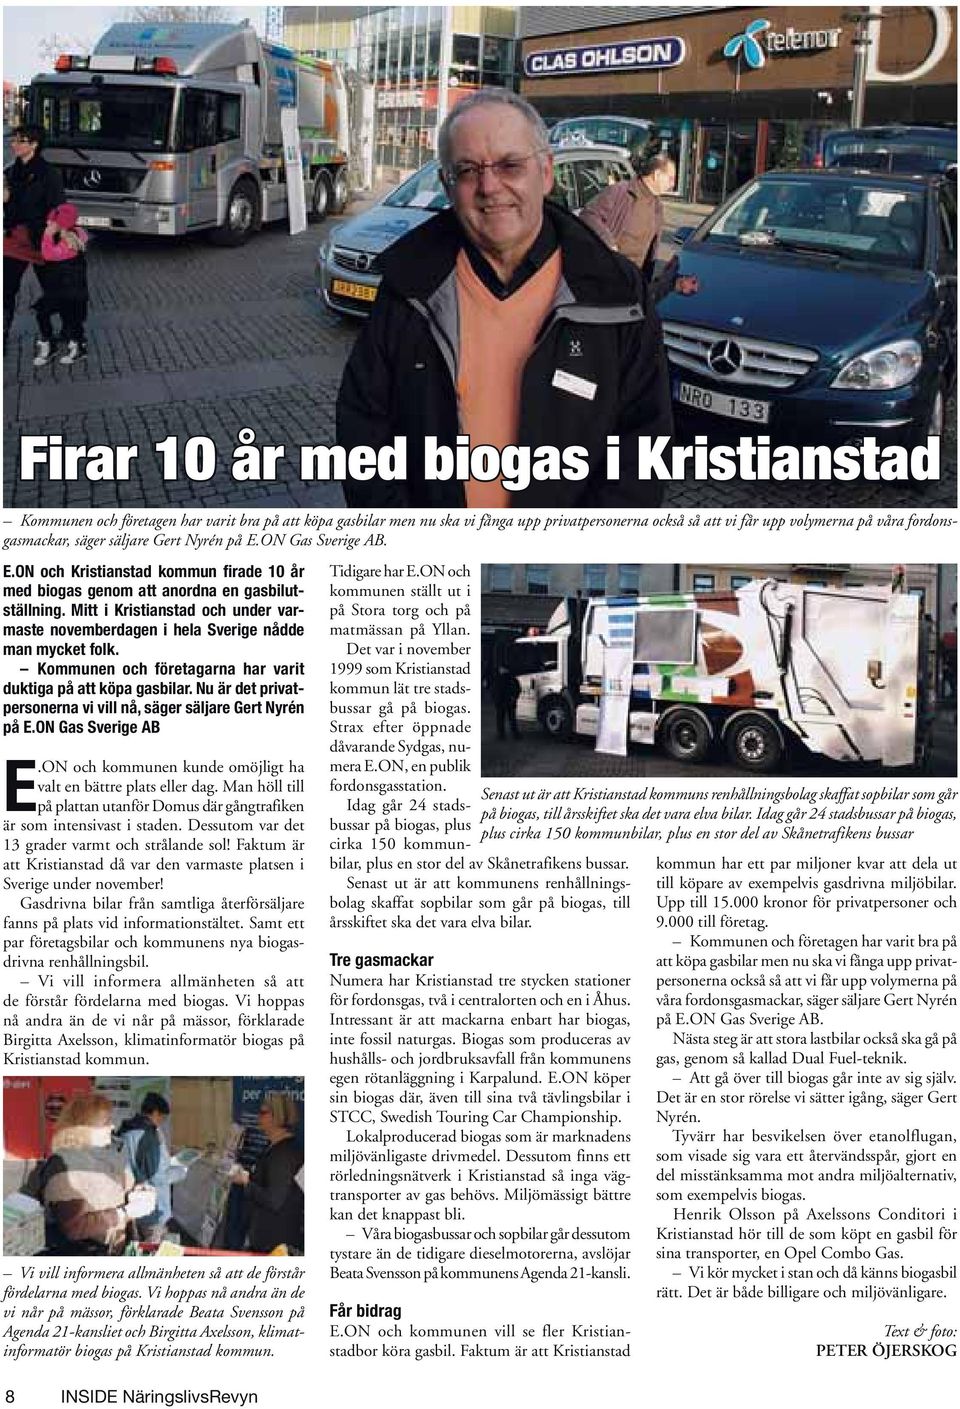 Mitt i Kristianstad och under varmaste novemberdagen i hela Sverige nådde man mycket folk. Kommunen och företagarna har varit duktiga på att köpa gasbilar.